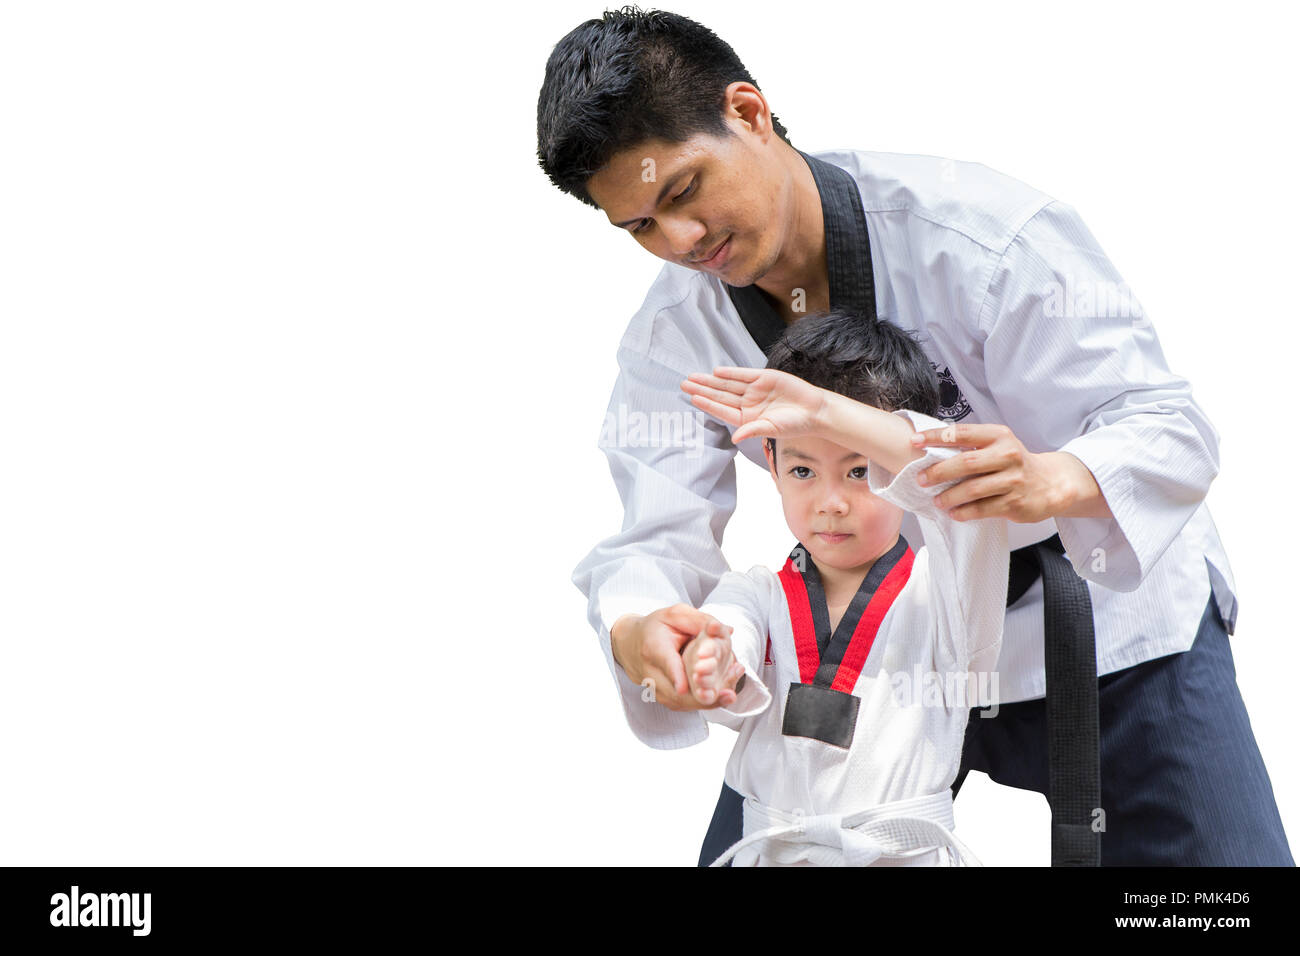 Ceinture noire de Taekwondo Fighter enseignant Punch pour enfants Stand Guard pour le vol isolé sur fond blanc avec clipping path Banque D'Images